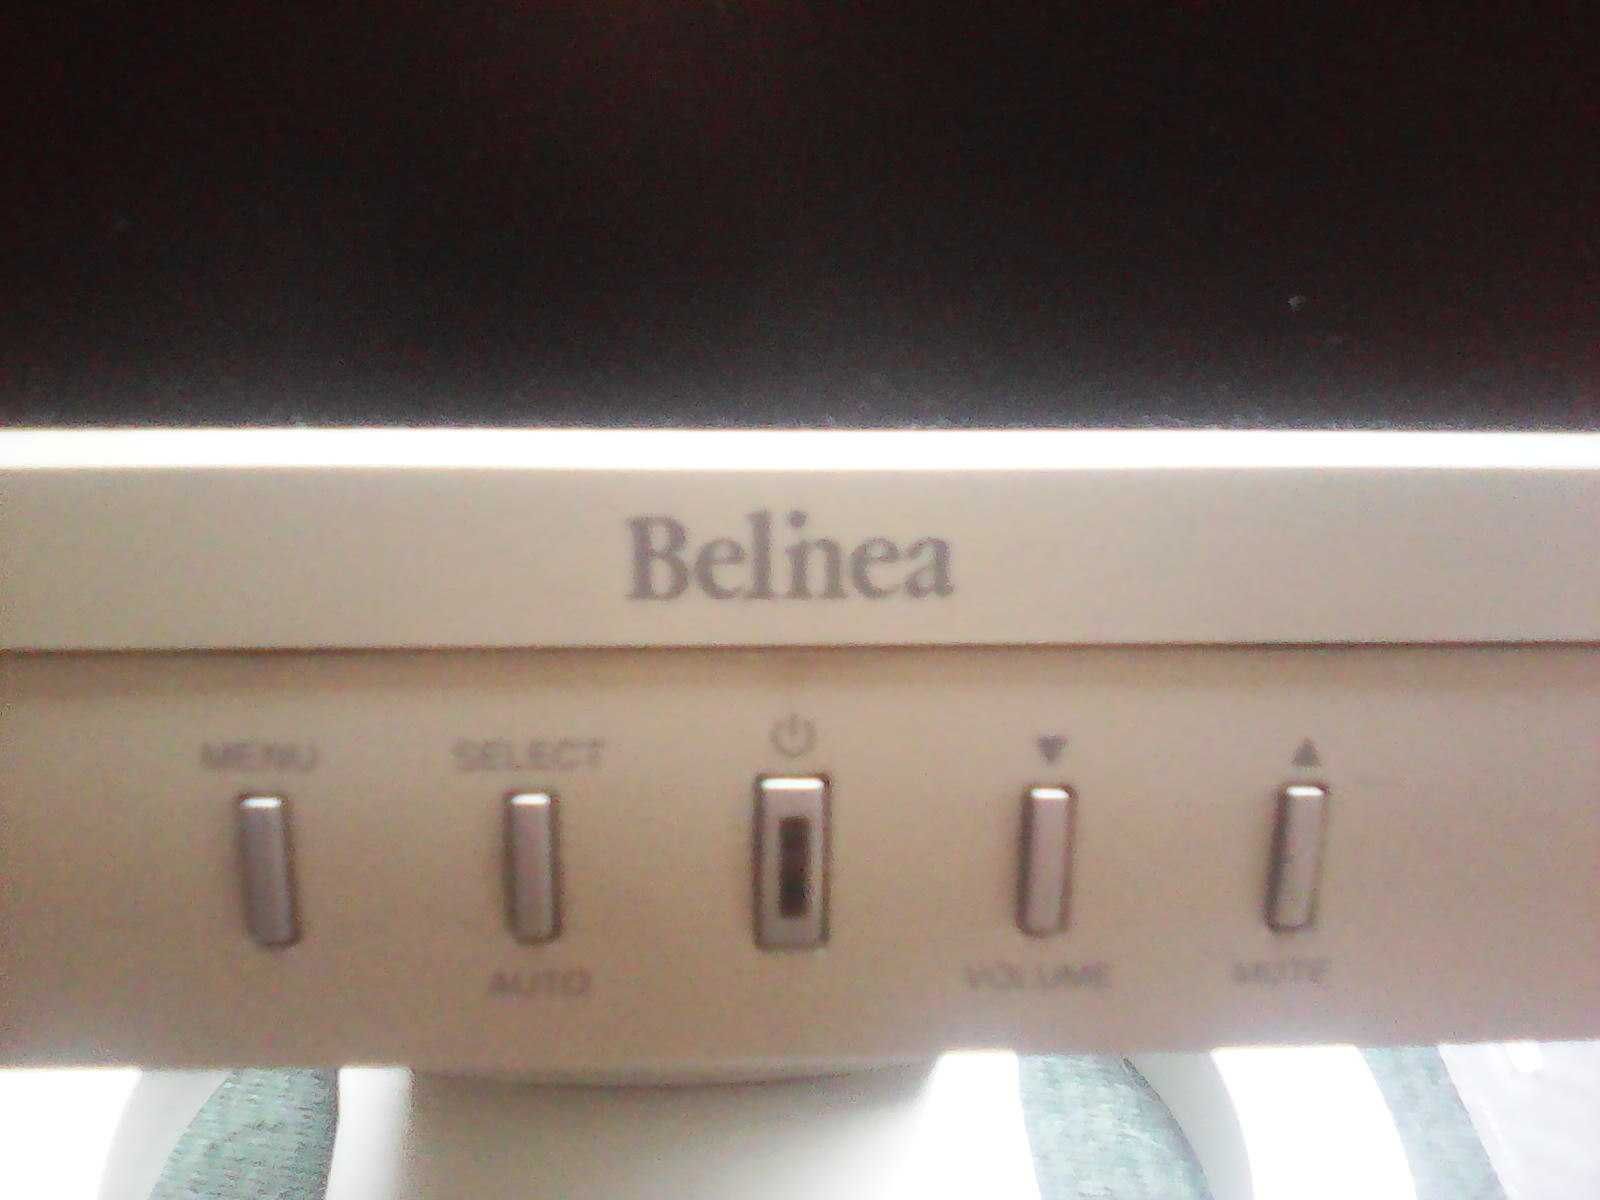 Monitor komputerowy Belinea